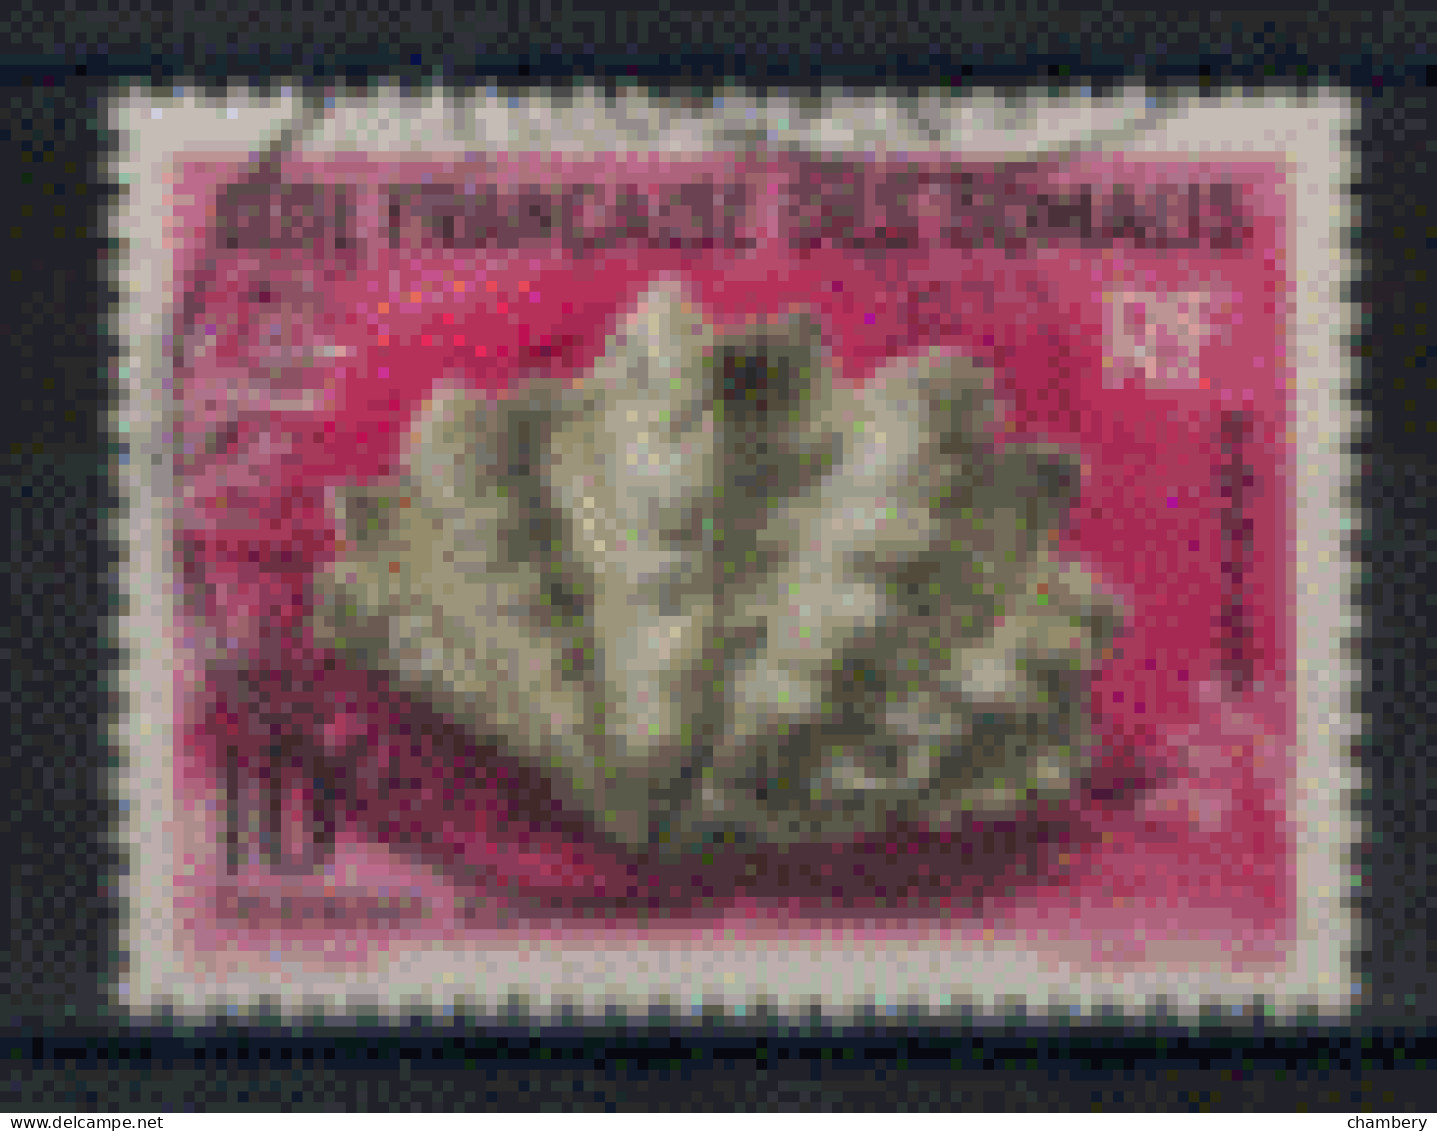 France - Somalies - "Coquillage De La Mer Rouge : Tridacna" - Oblitéré N° 312 De 1962 - Used Stamps